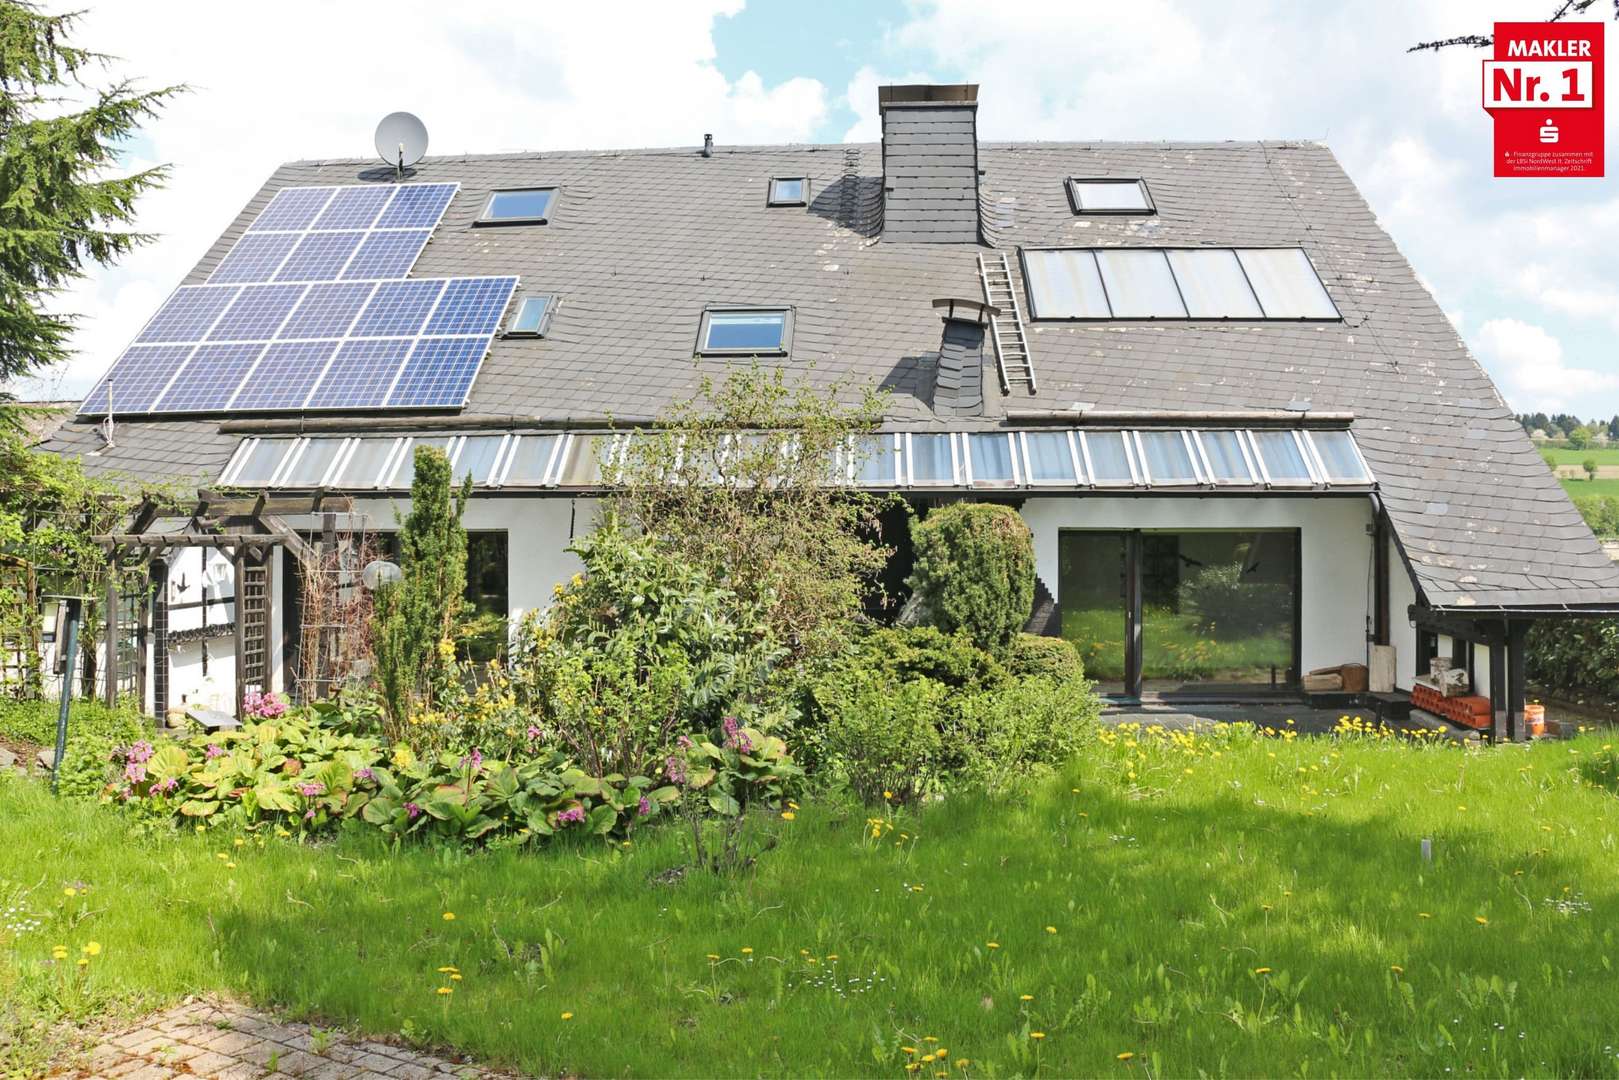 2914033 fio - Einfamilienhaus in 59955 Winterberg mit 220m² kaufen